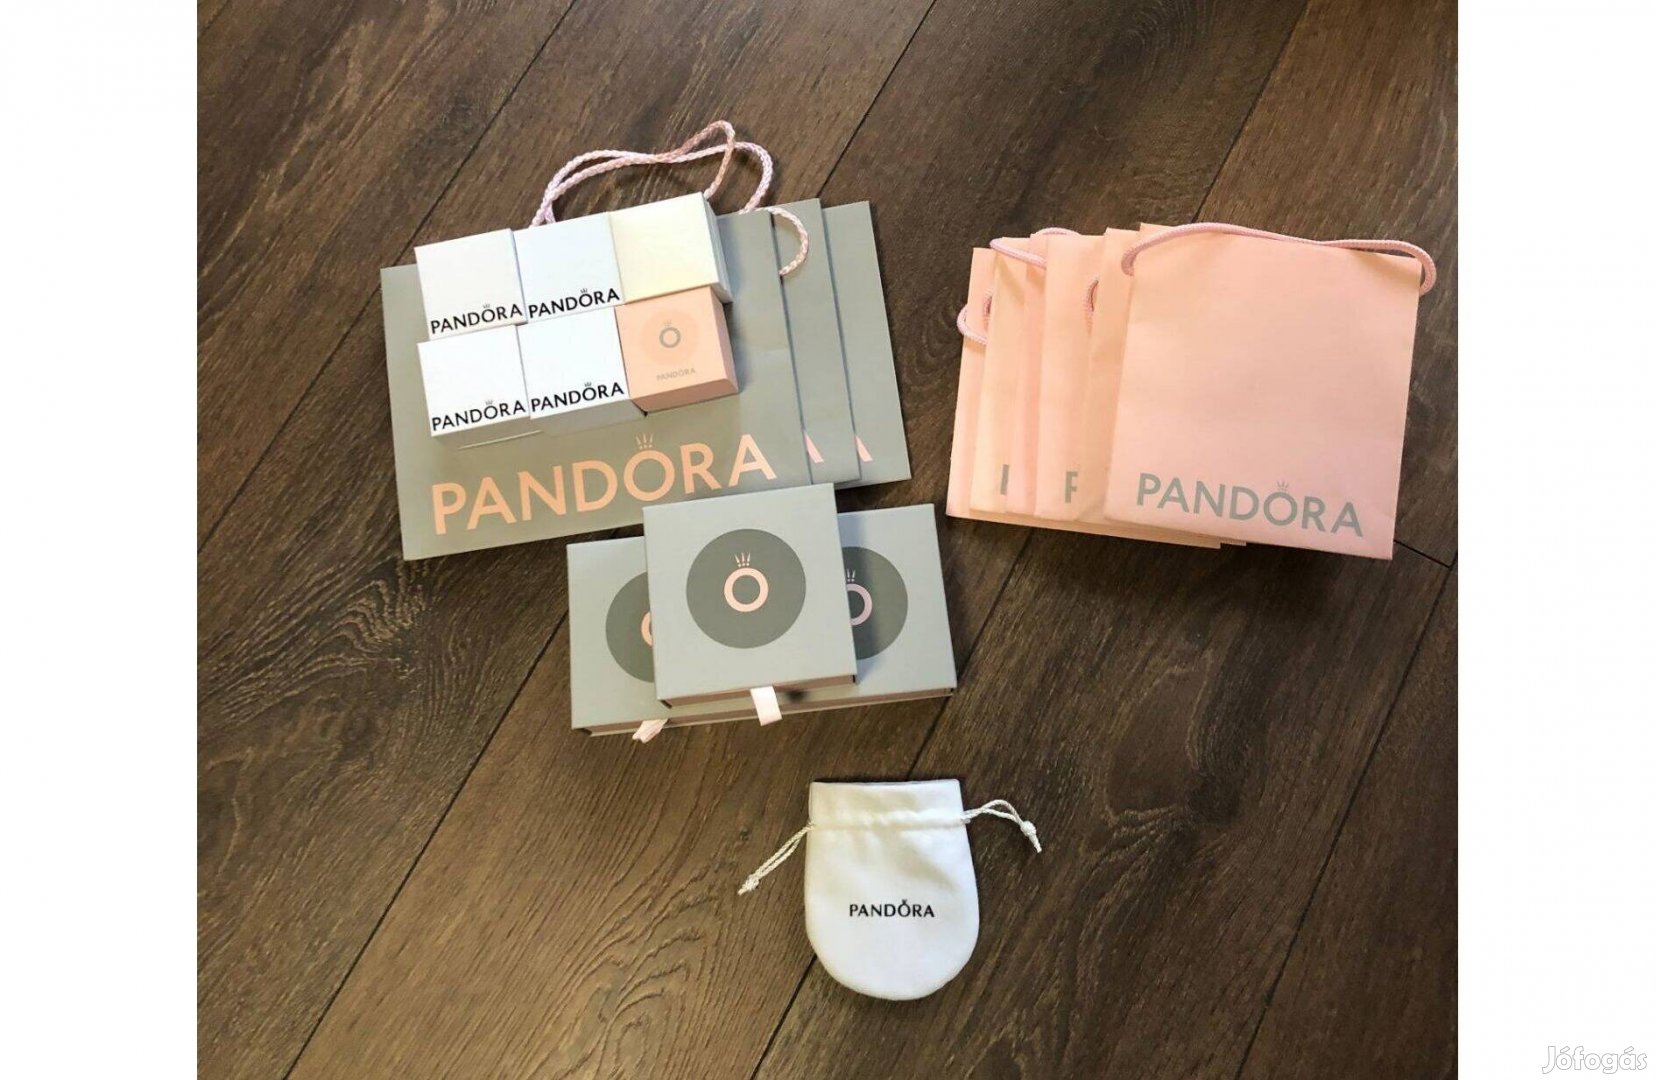 Pandora tasak és dobozok